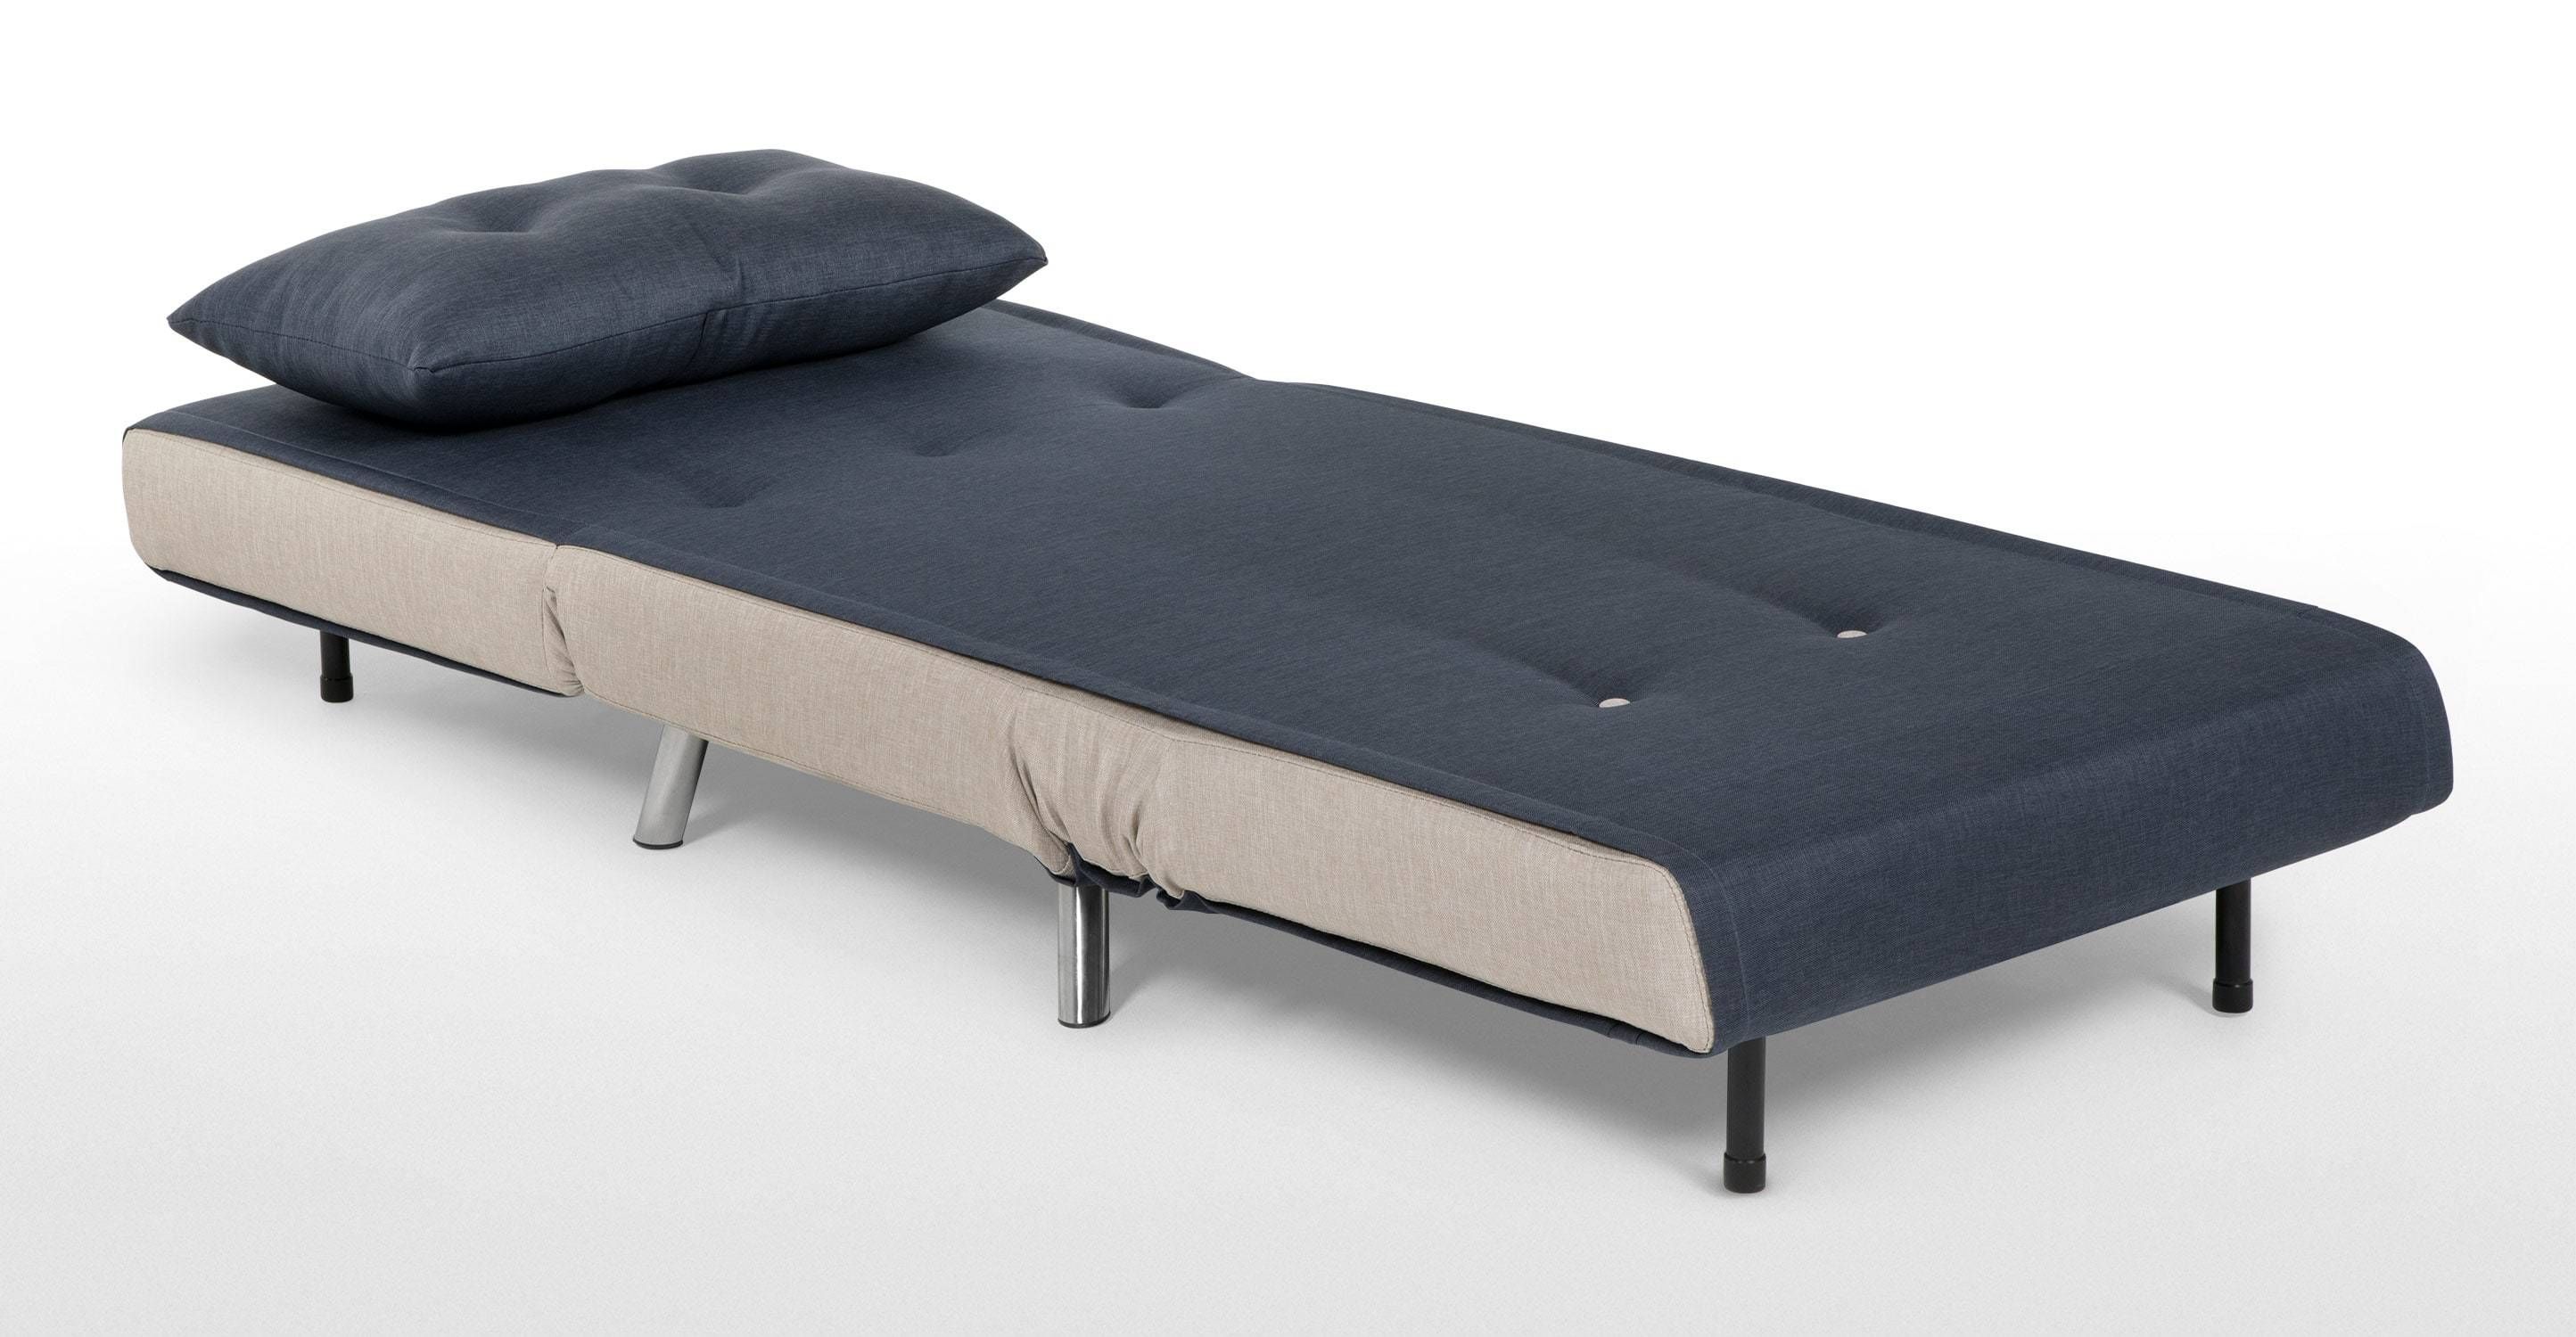 Sofas Center Shocking Sofa Single Image Inspirations Leather Within Ikea Single Sofa Beds 